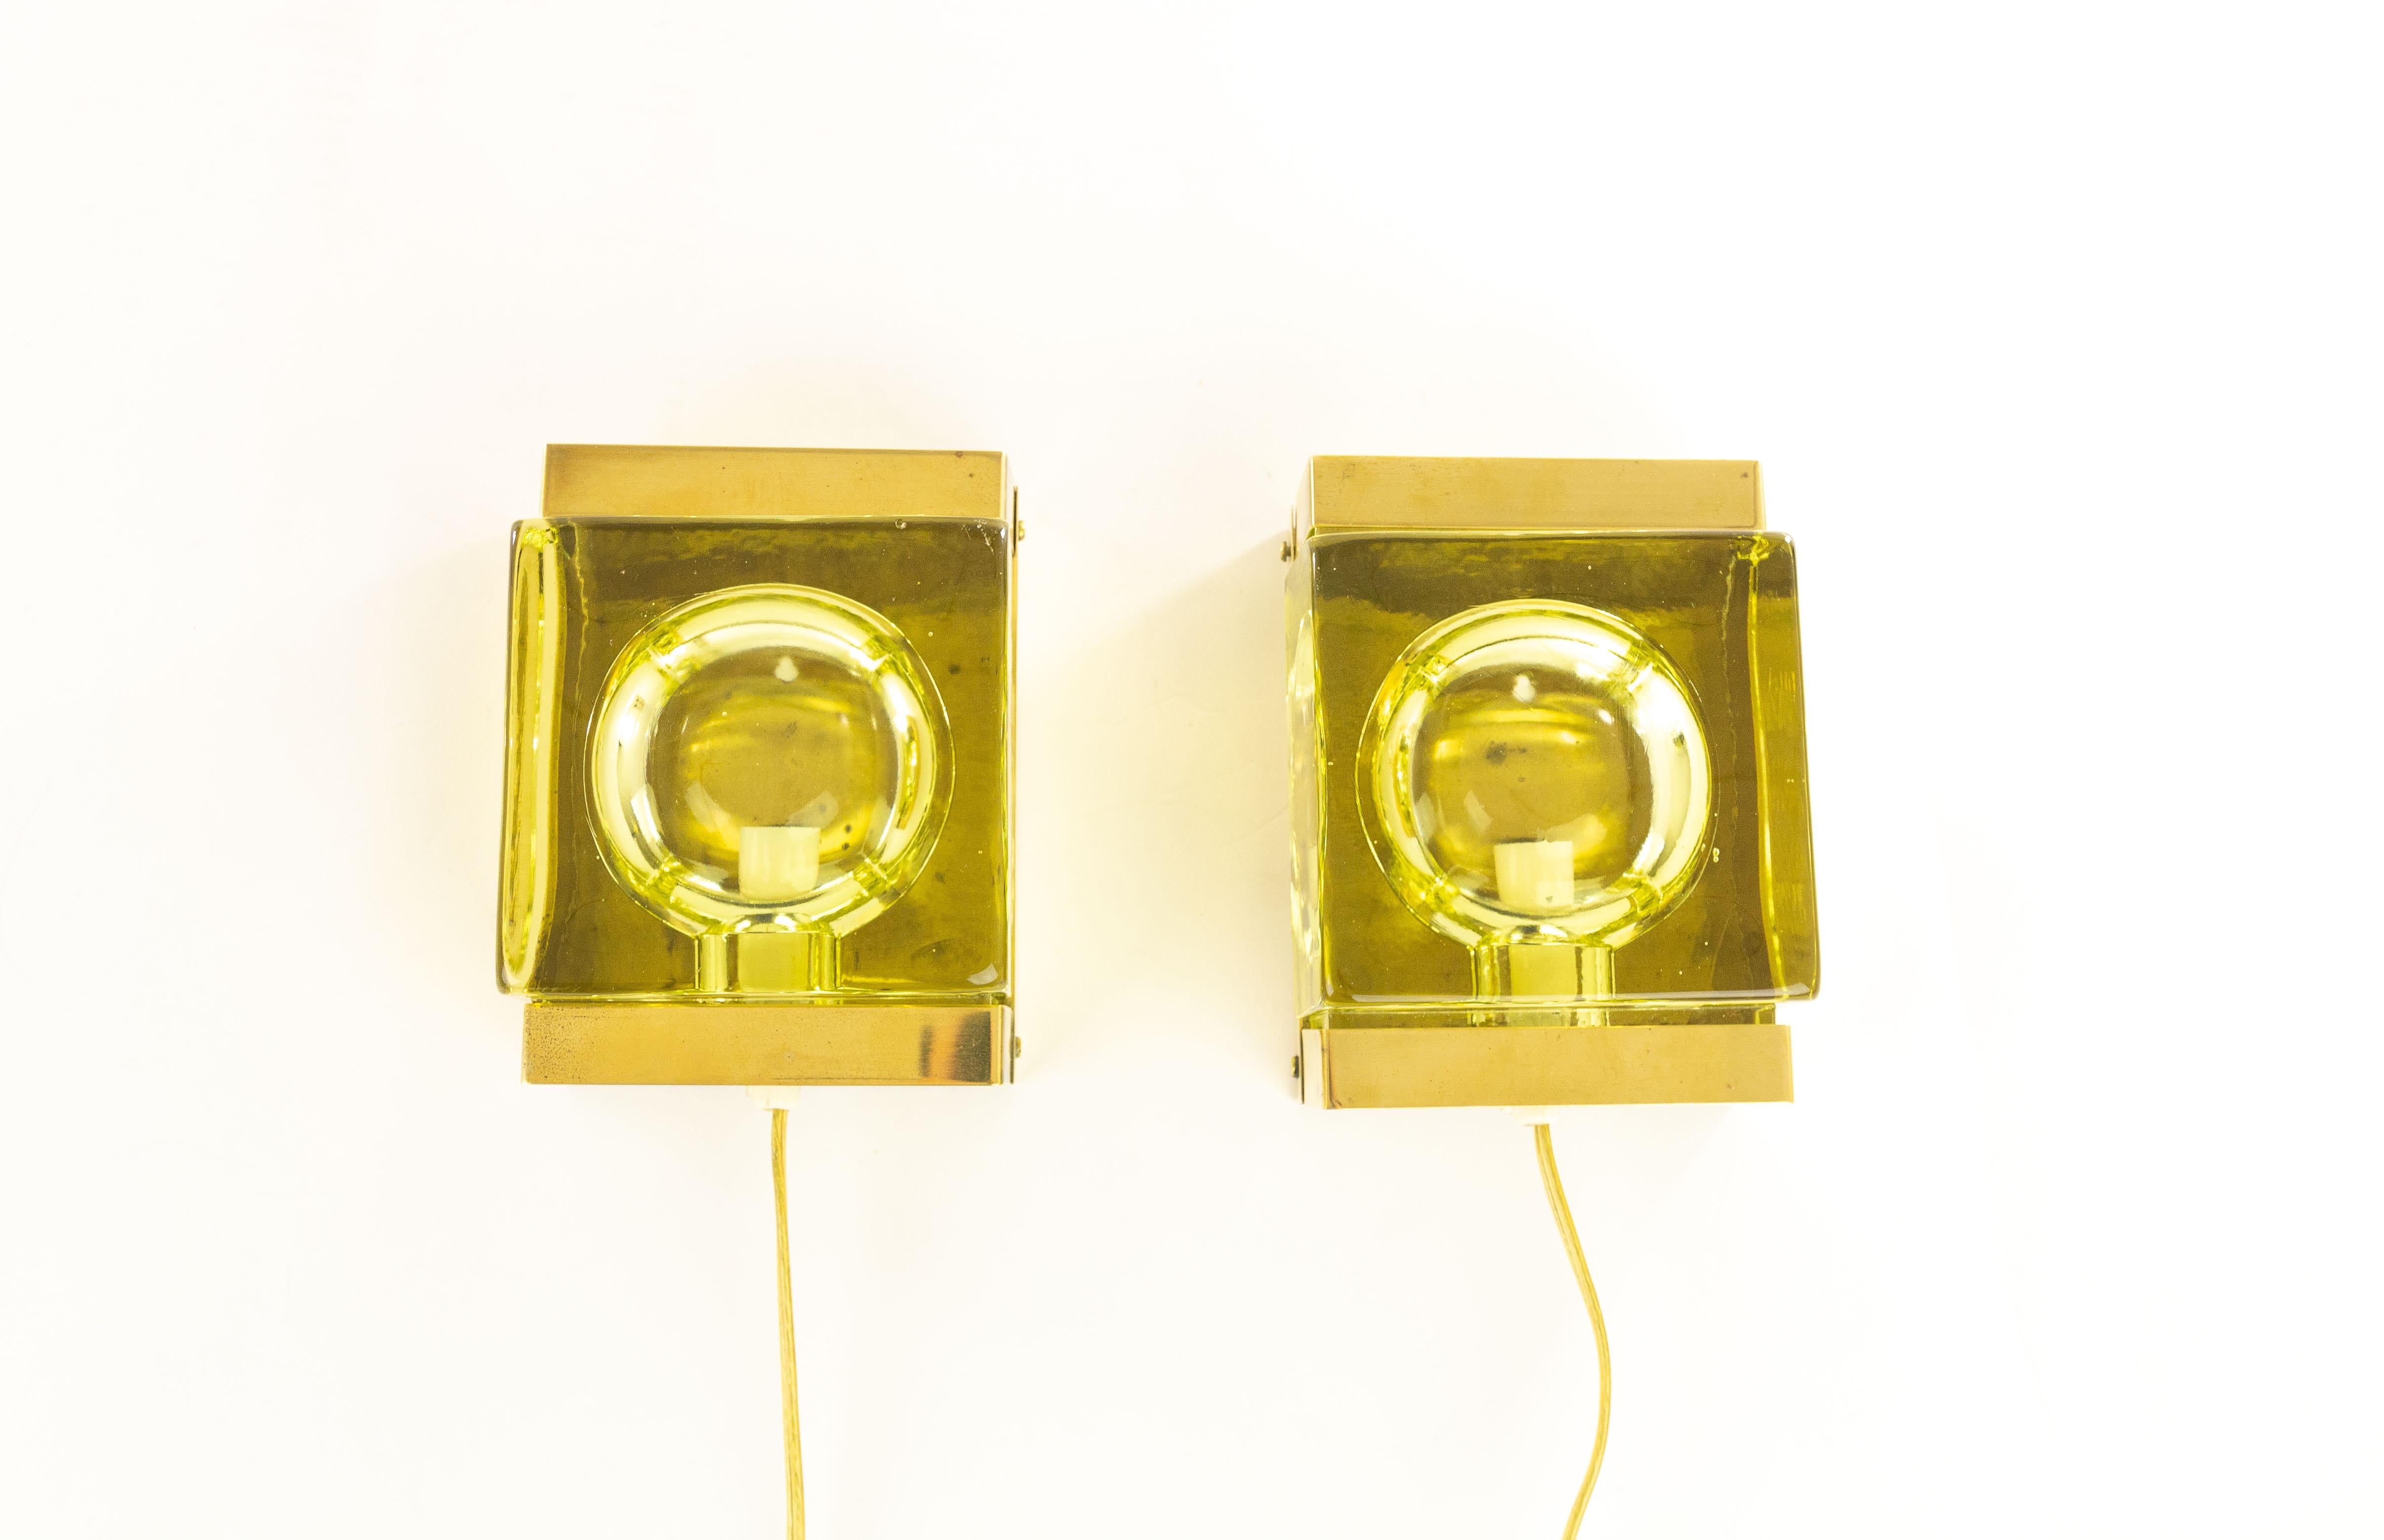 Paire d'appliques Maritim Lampet, produites par le fabricant danois de luminaires Vitrika dans les années 1970. La version avec le verre verdâtre est spéciale et difficile à trouver.

Les deux lampes sont composées de deux parties : un corps en